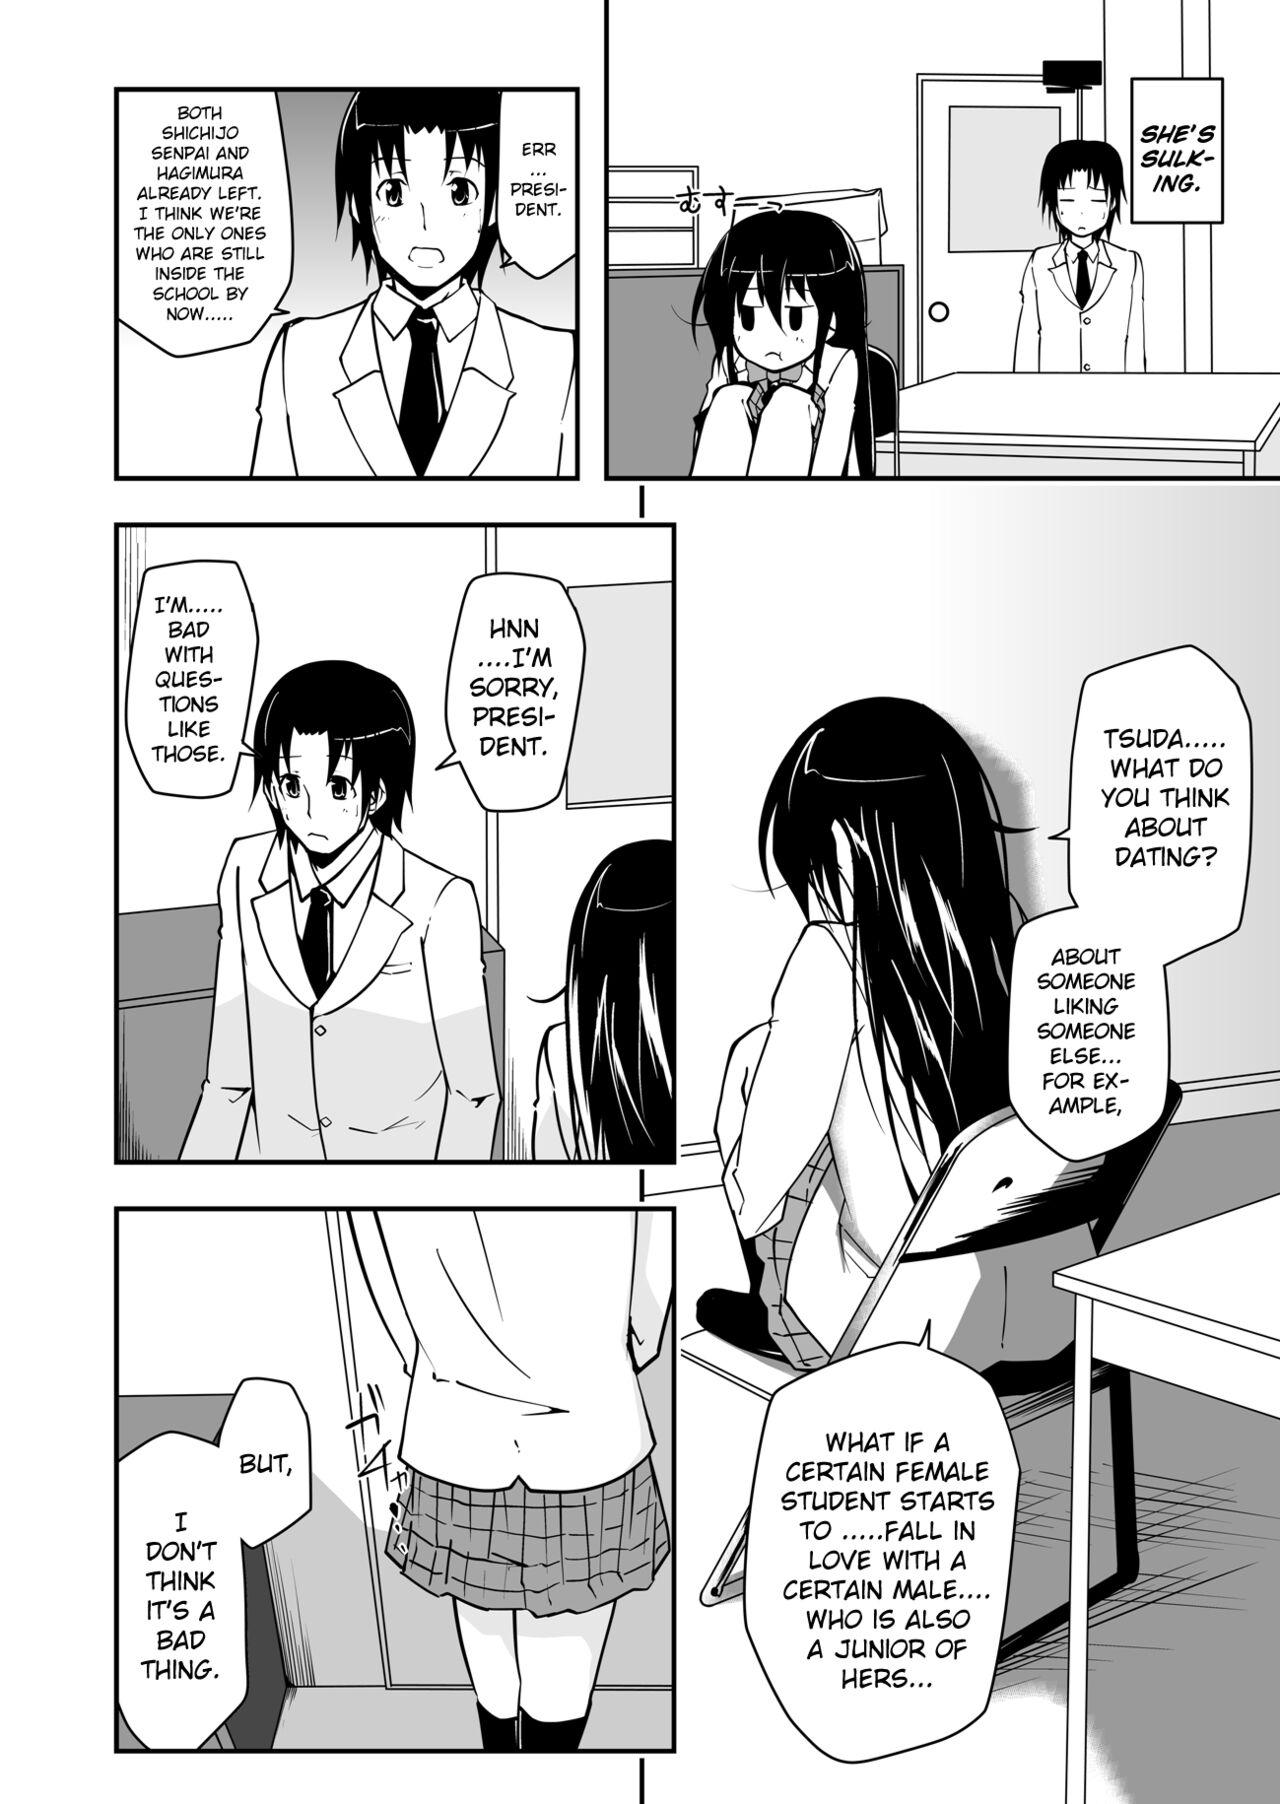 Women Sucking Dick *********! 1 - Seitokai yakuindomo Girl Get Fuck - Page 4